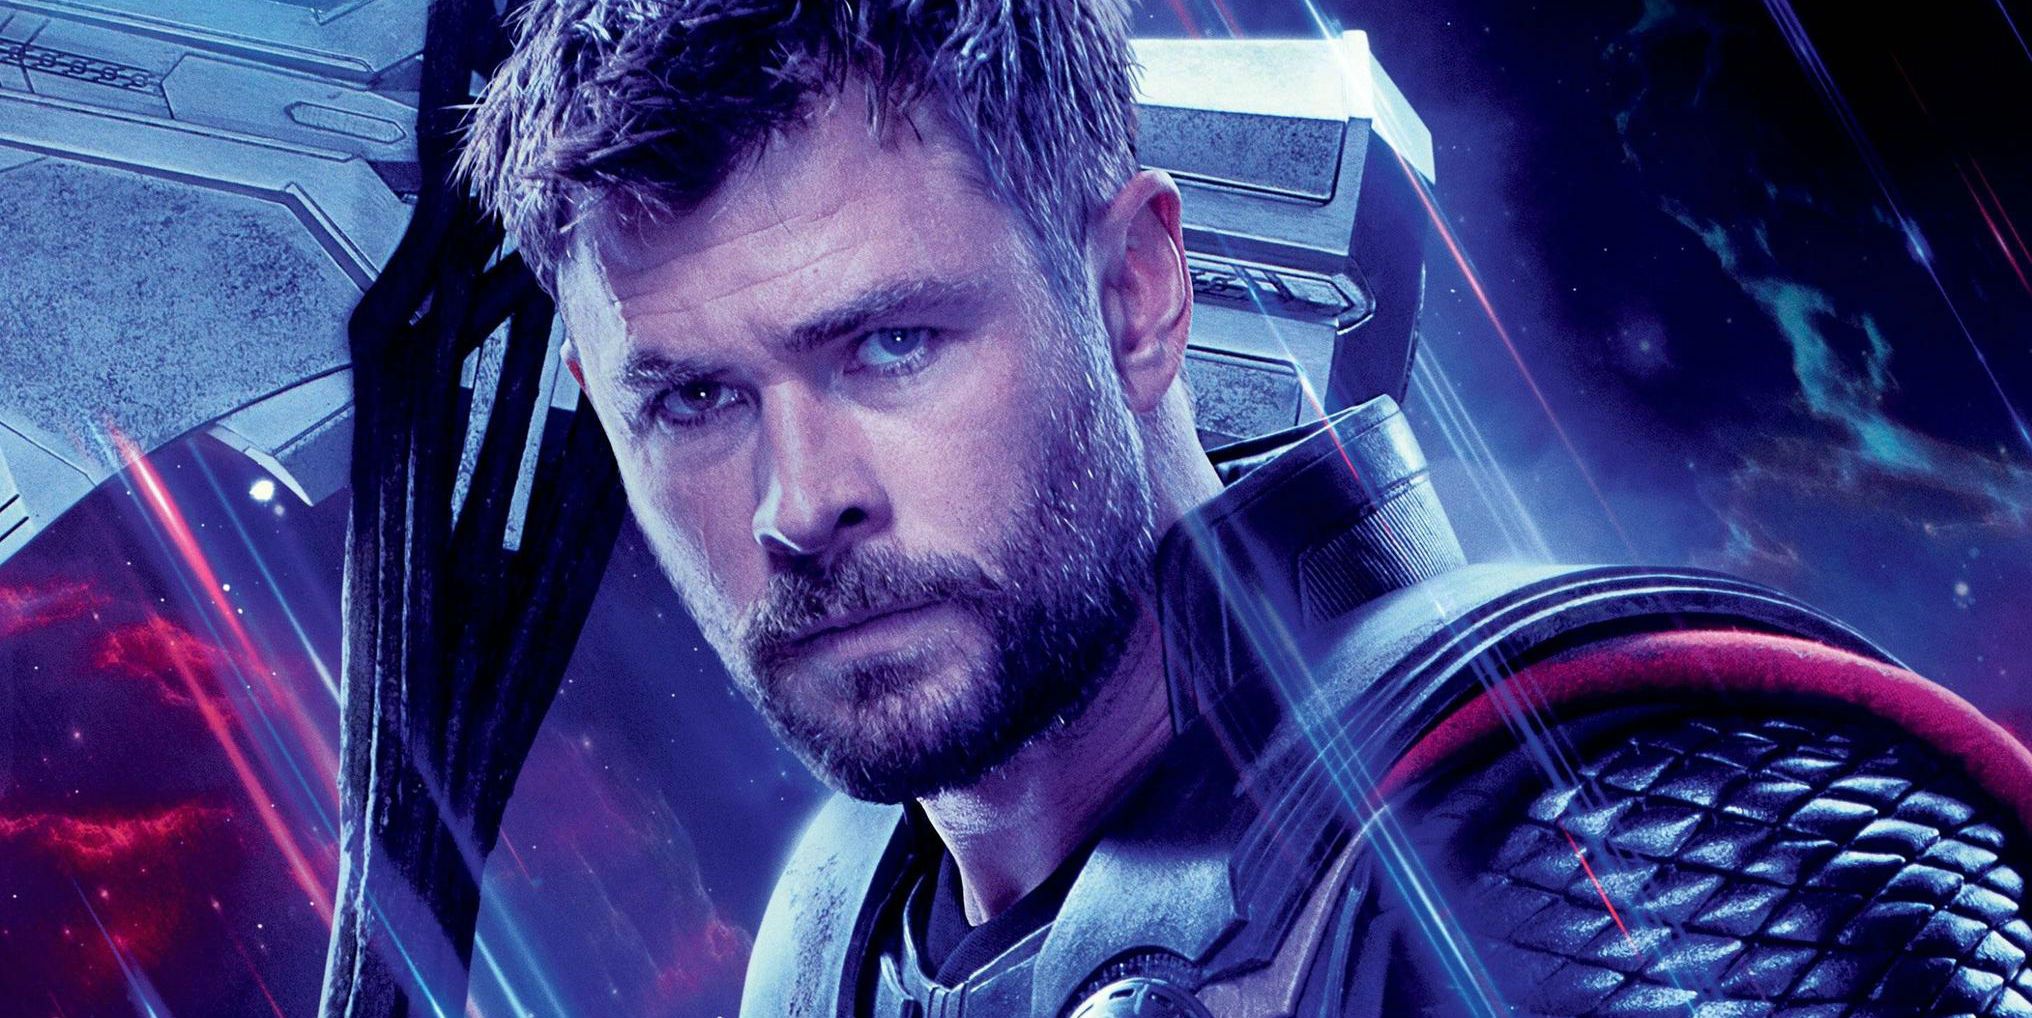 Thor with Stormbreaker for Avengers Endgame